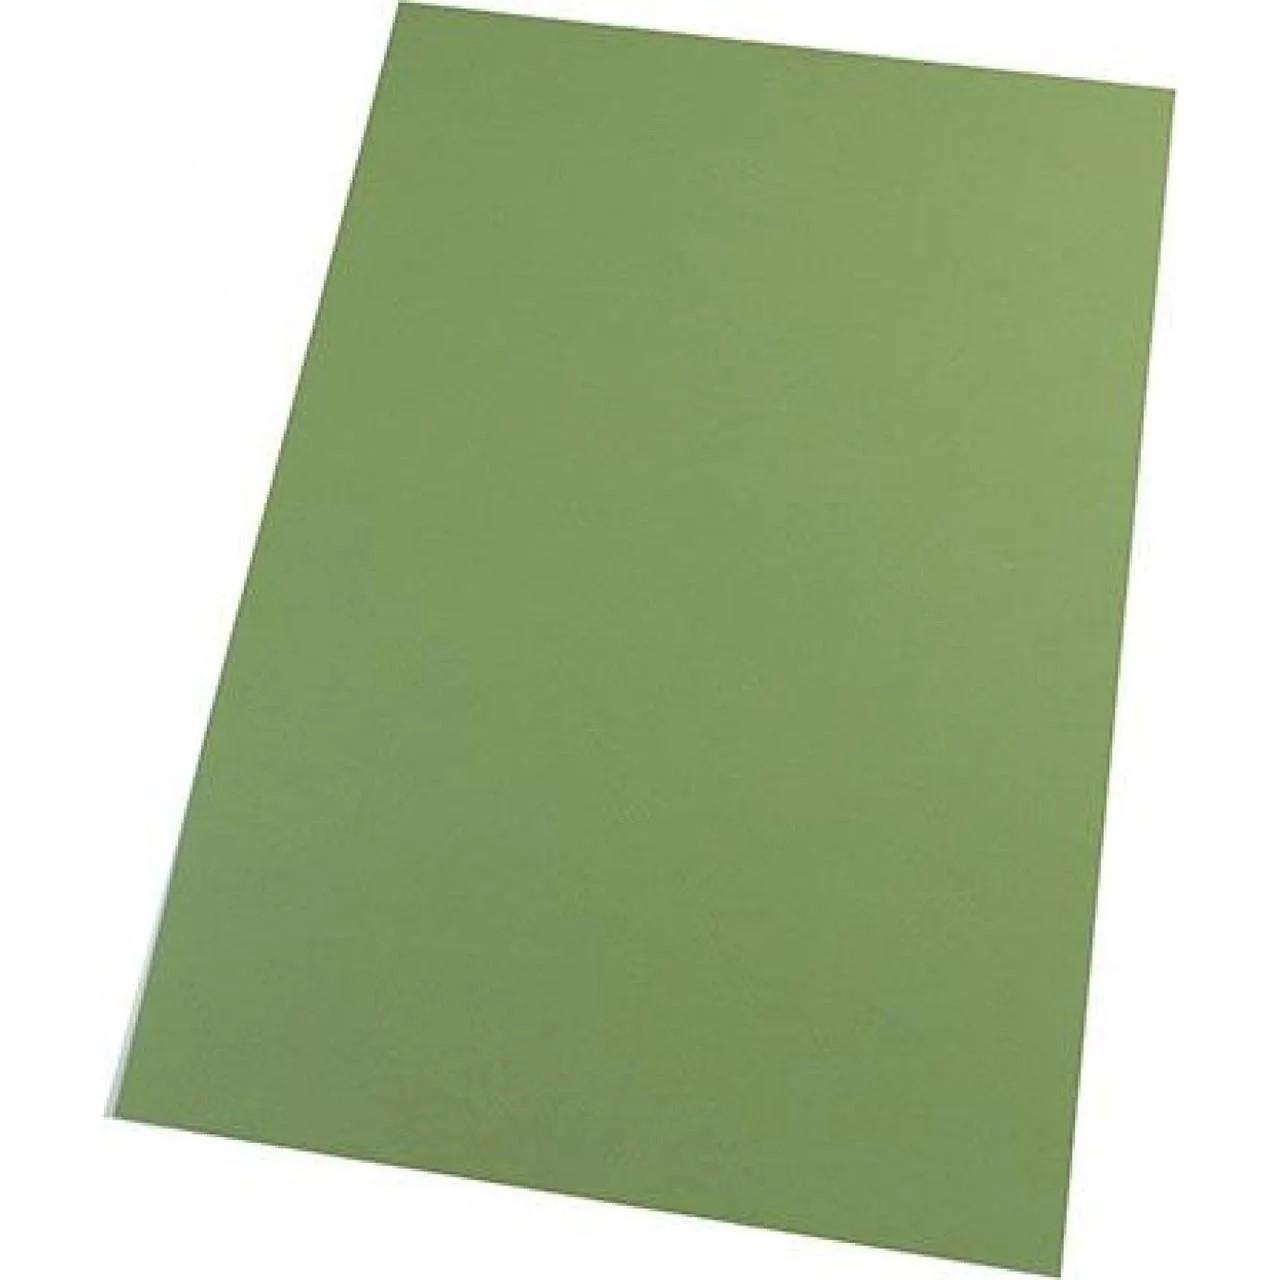 Бумага для пастели Tiziano A4 (21 * 29,7см), №14 muschio, 160г / м2, оливковый, среднее зерно, Fabriano